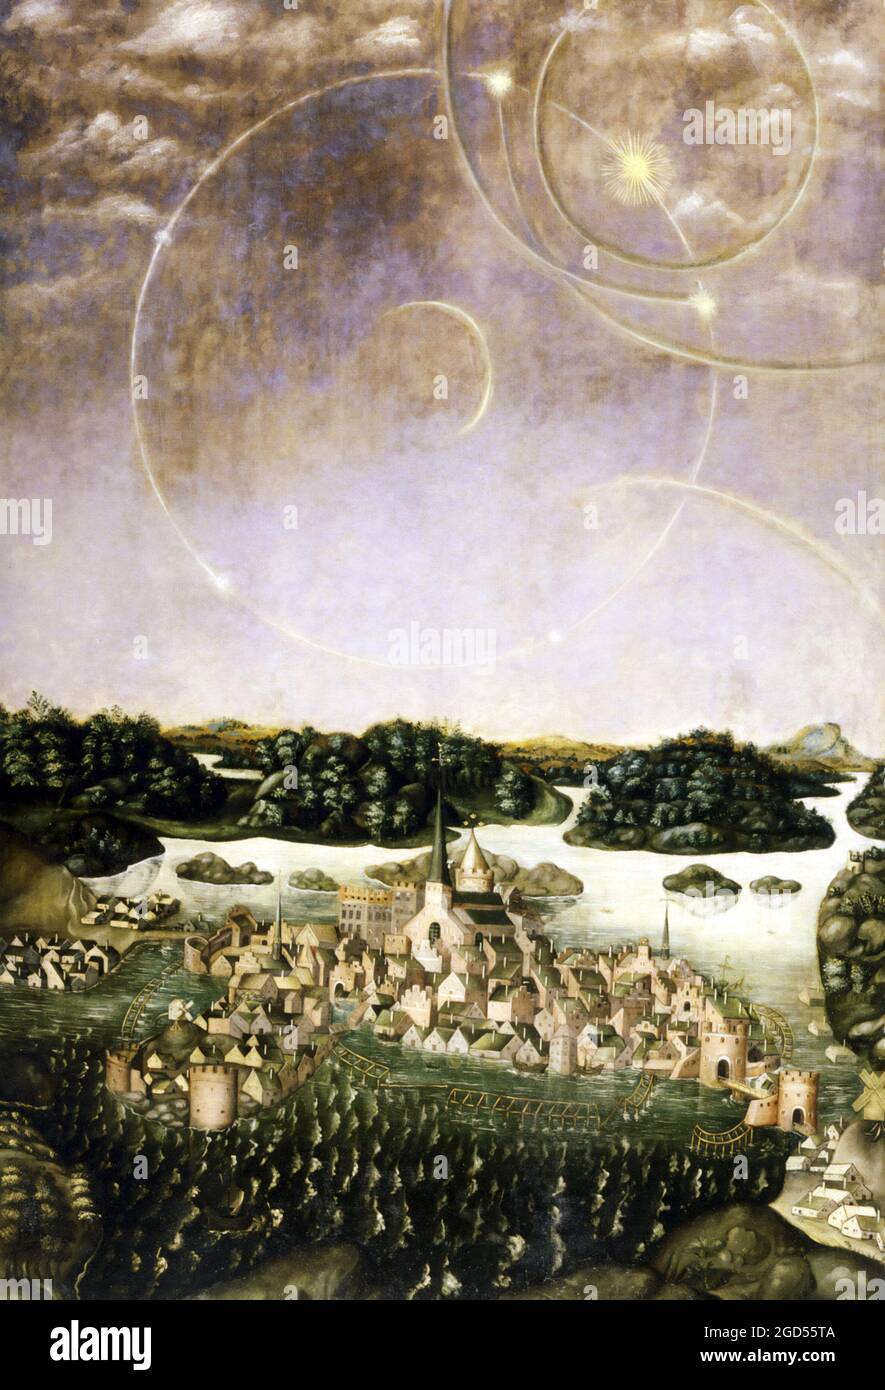 Vädersolstavlan ist ein Öl-auf-Tafel-Gemälde, das eine Halo-Anzeige darstellt, ein atmosphärisches optisches Phänomen, das am 20. April 1535 über Stockholm beobachtet wurde. Stockfoto